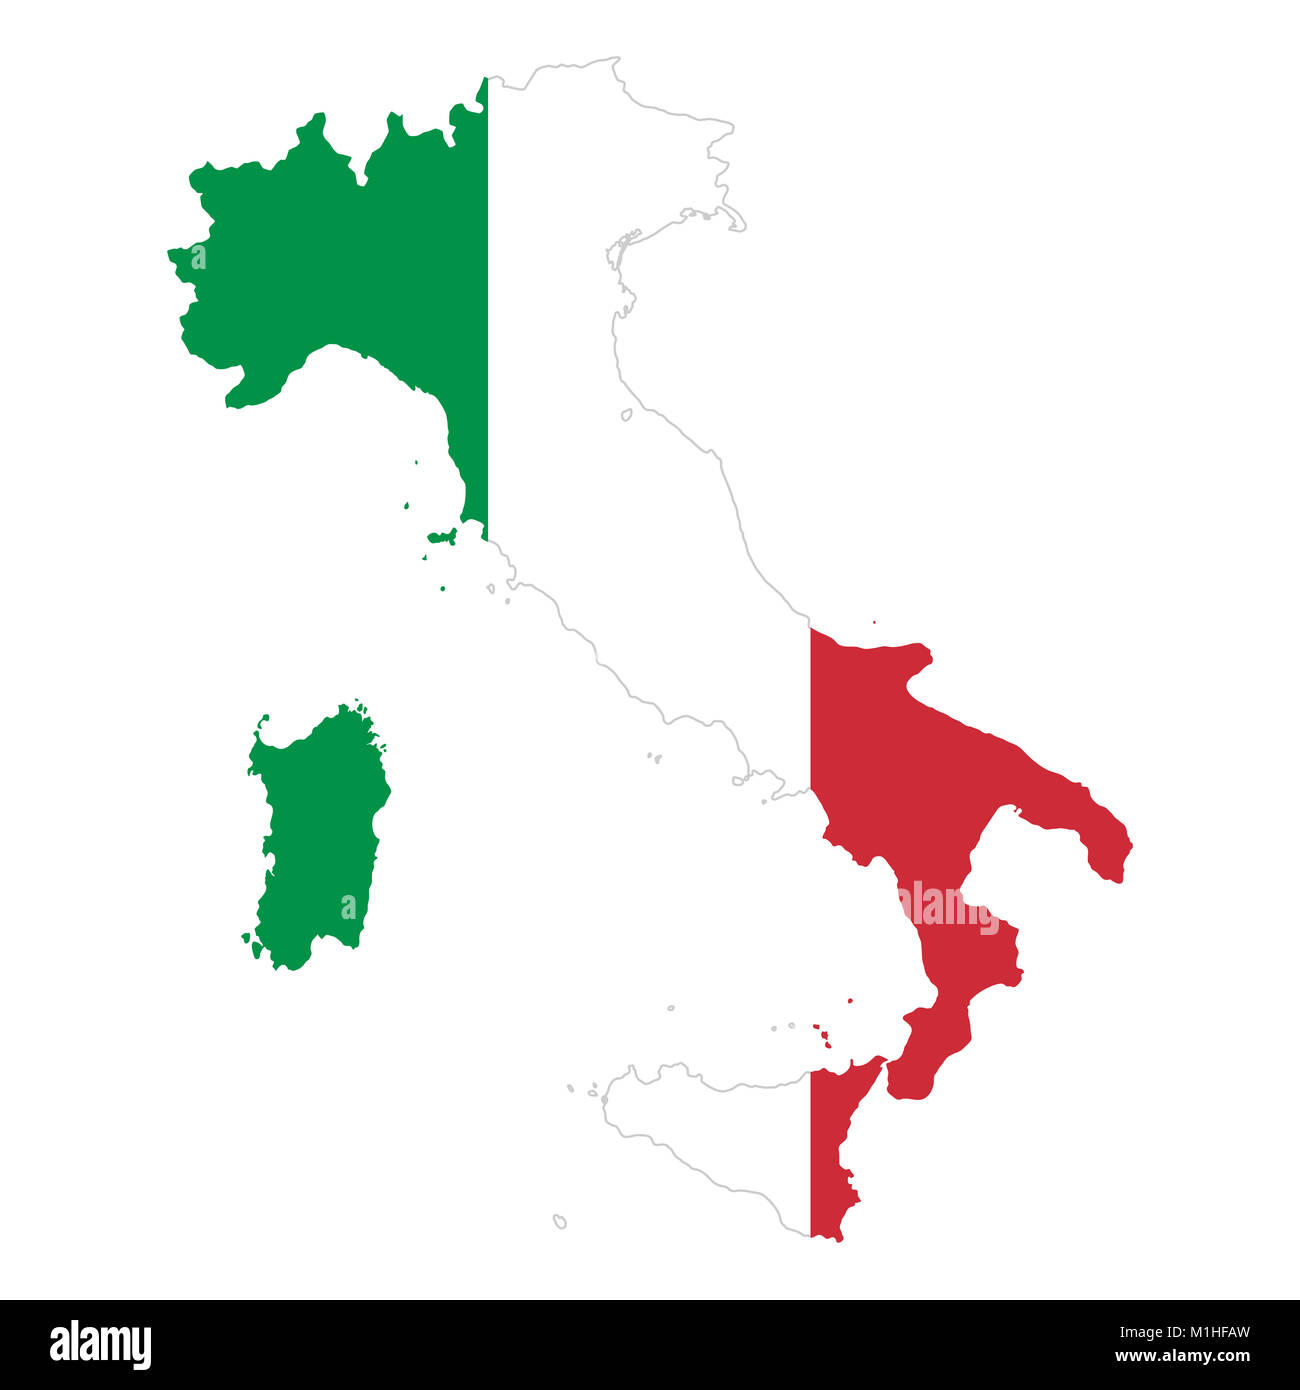 Repubblica italiana bandiera in silhouette di paese. Continente e confini dell'Italia come contorno, entro il banner della nazione in colori verde, bianco e rosso. Foto Stock